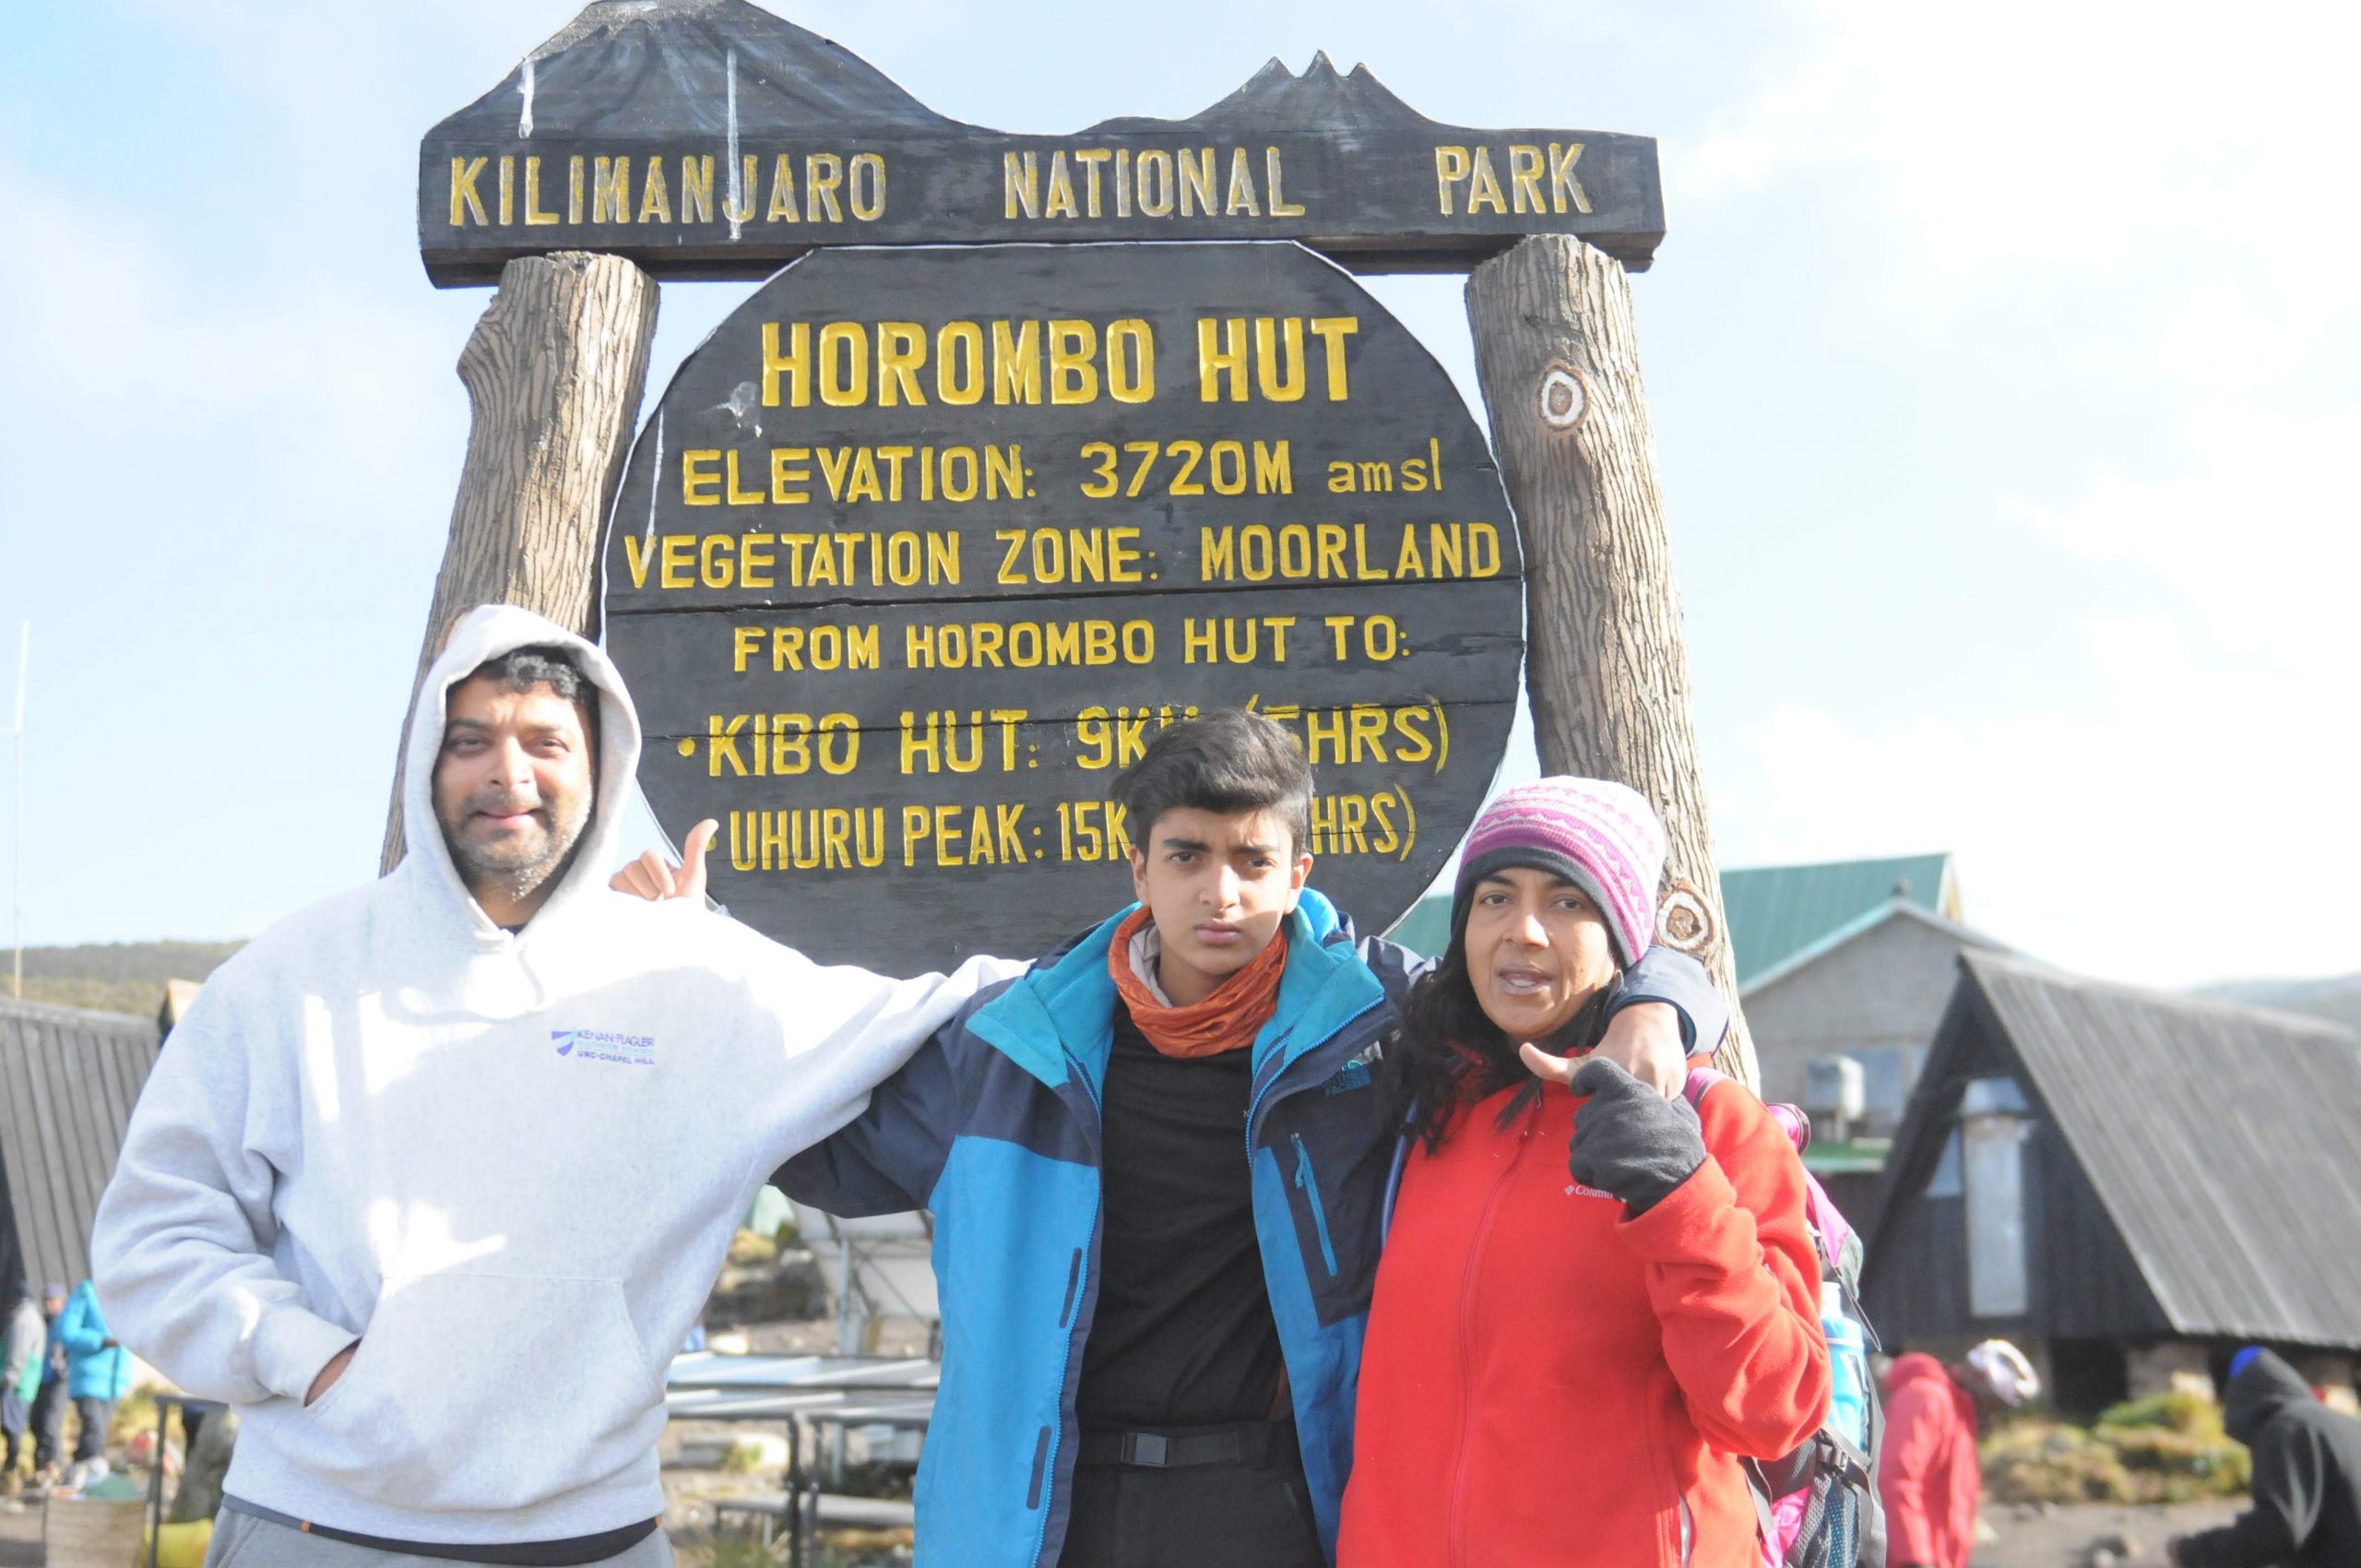 Family Adventure Trek to Kilimanjaro